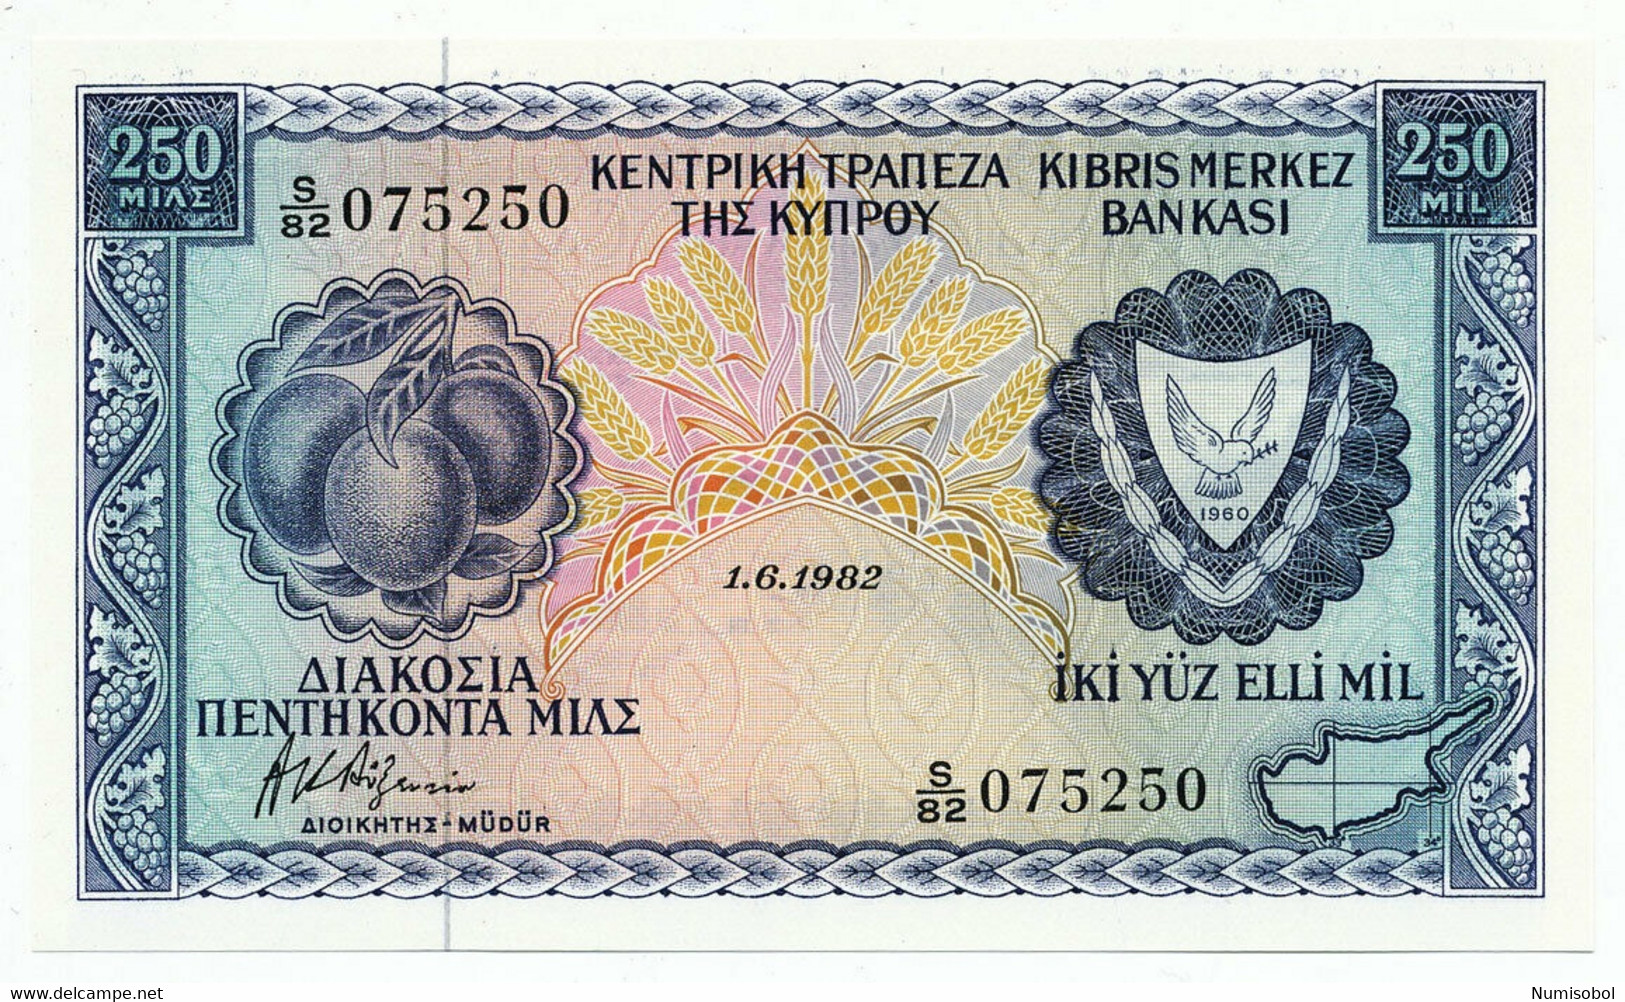 CYPRUS - 240 Mils 1. 6. 1982. P41c, UNC. (CY002) - Chipre